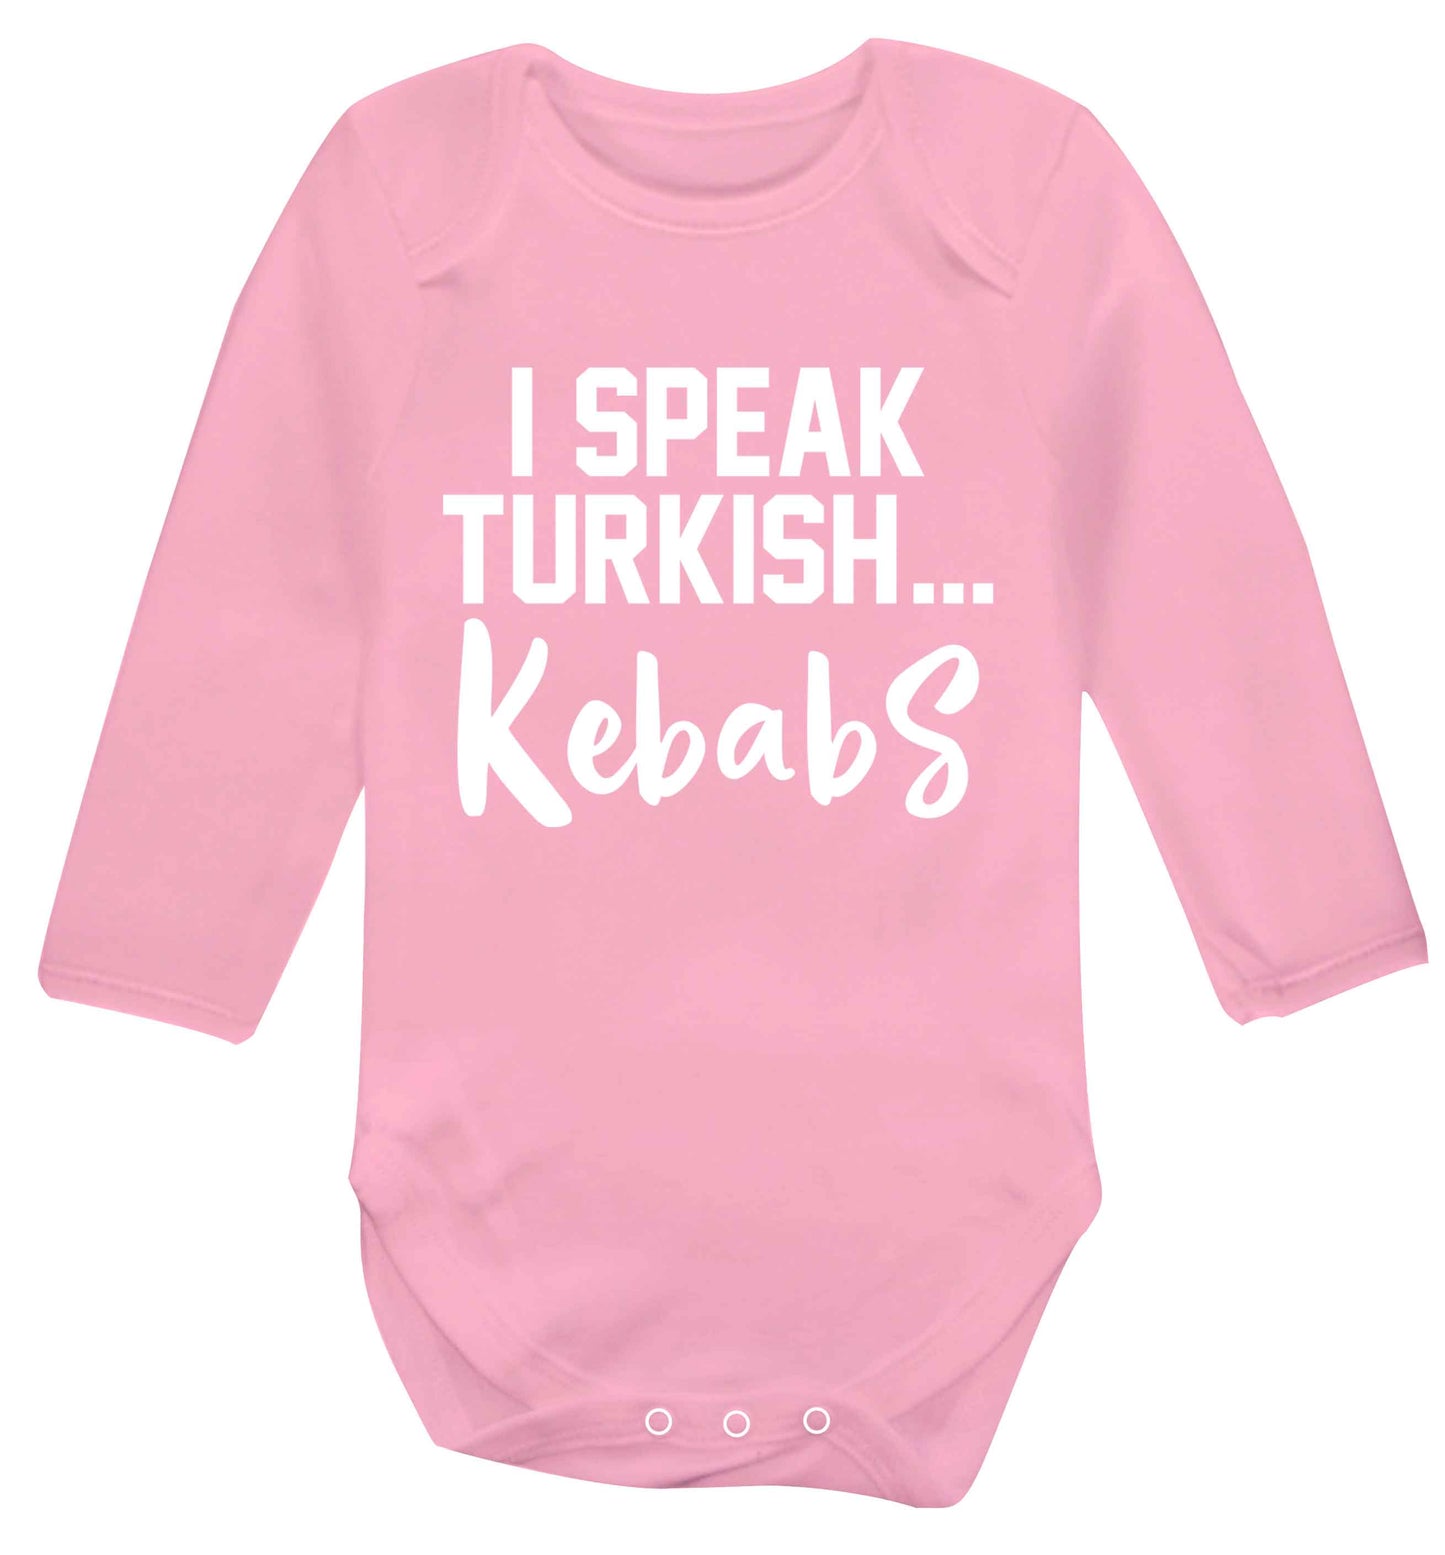 I speak Turkish...kebabs Baby Vest long sleeved pale pink 6-12 months